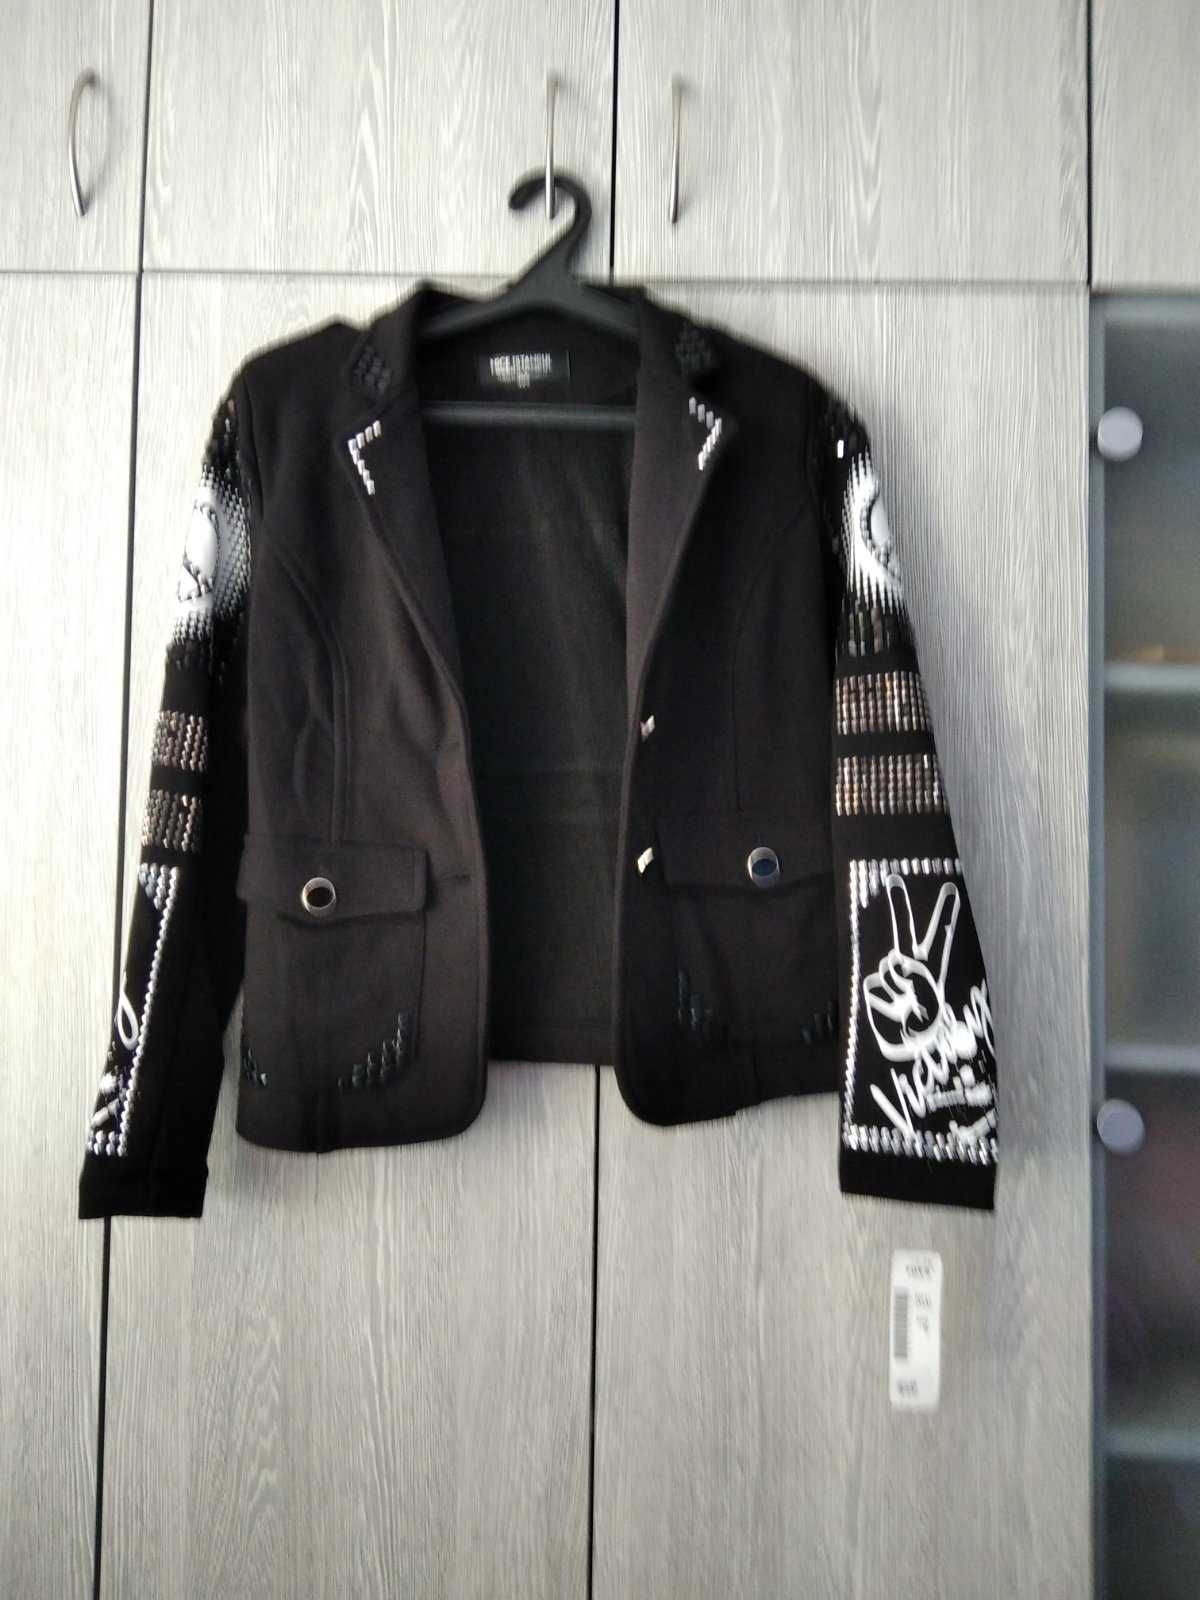 Пиджак черный новый с биркой Nice Istanbul Fashion Addict